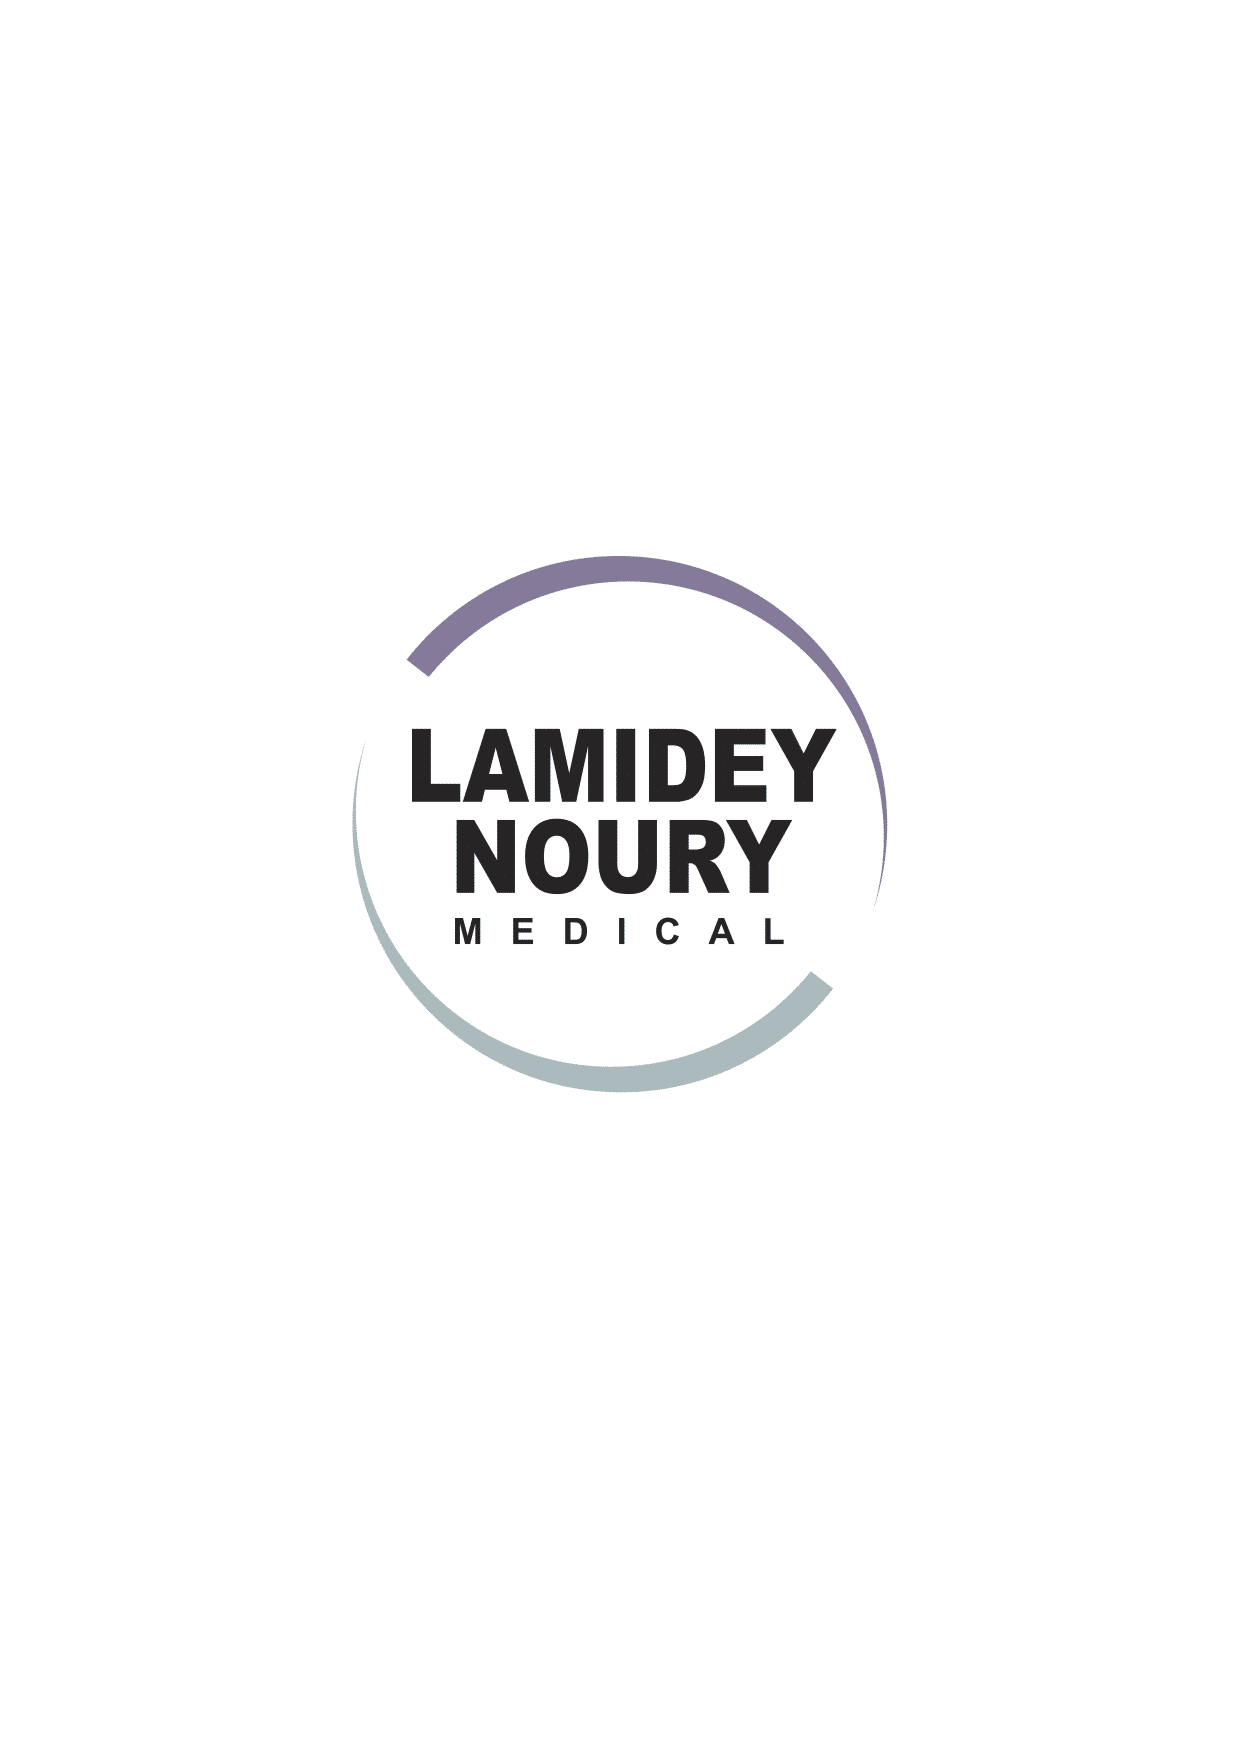 Logo Lamidey noury medical